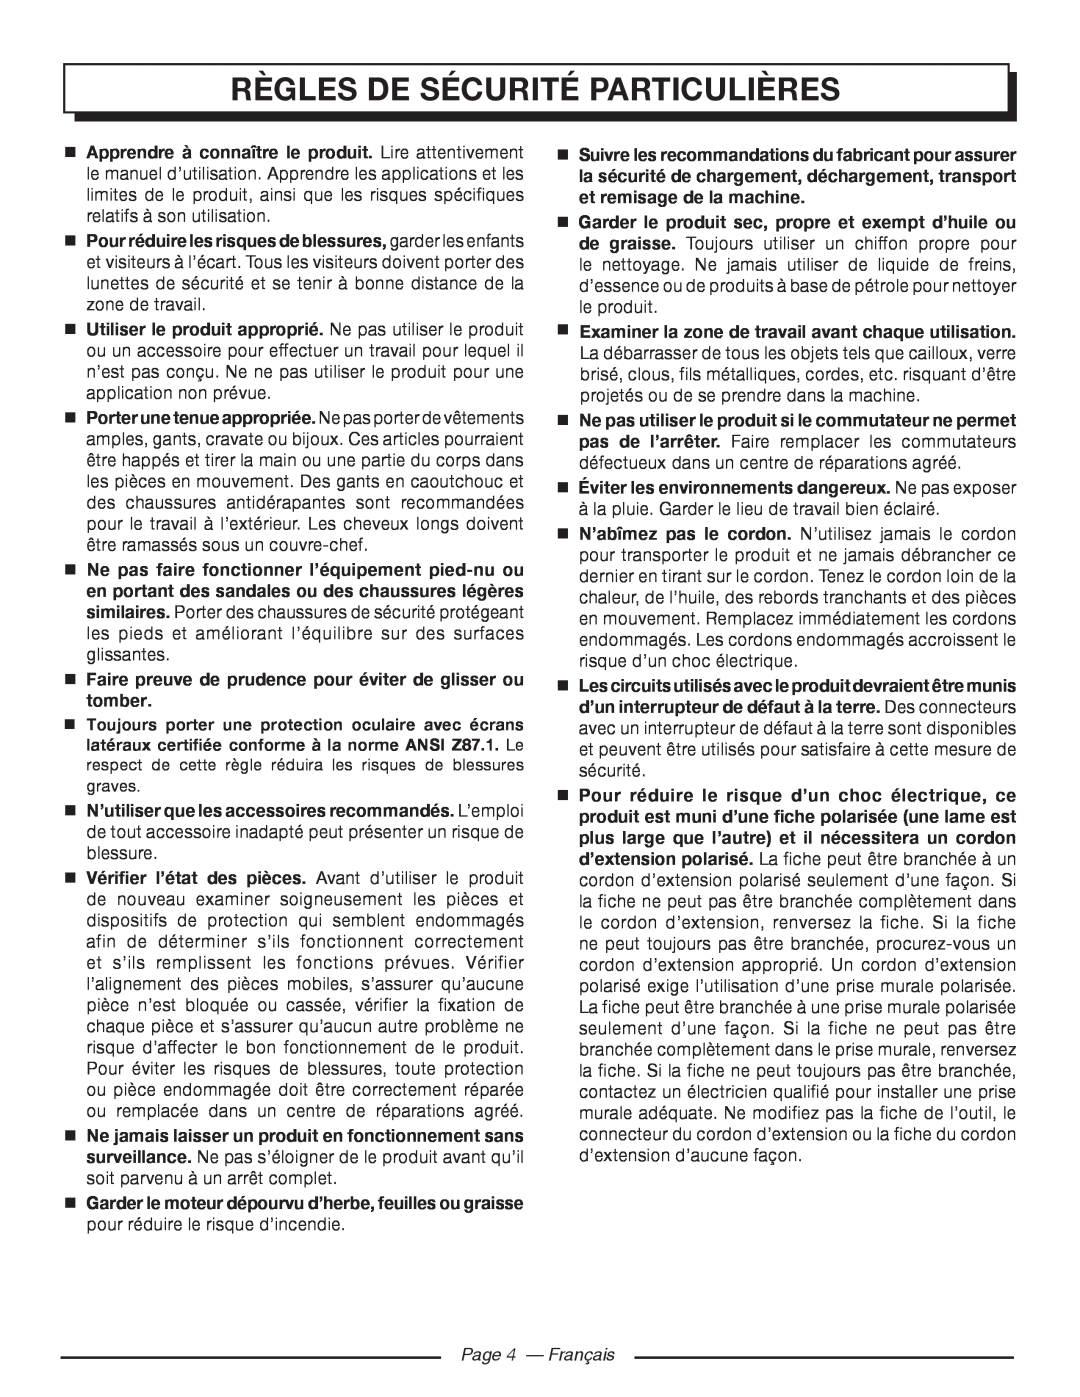 Homelite UT80720 manuel dutilisation Règles De Sécurité Particulières, Page 4 - Français 